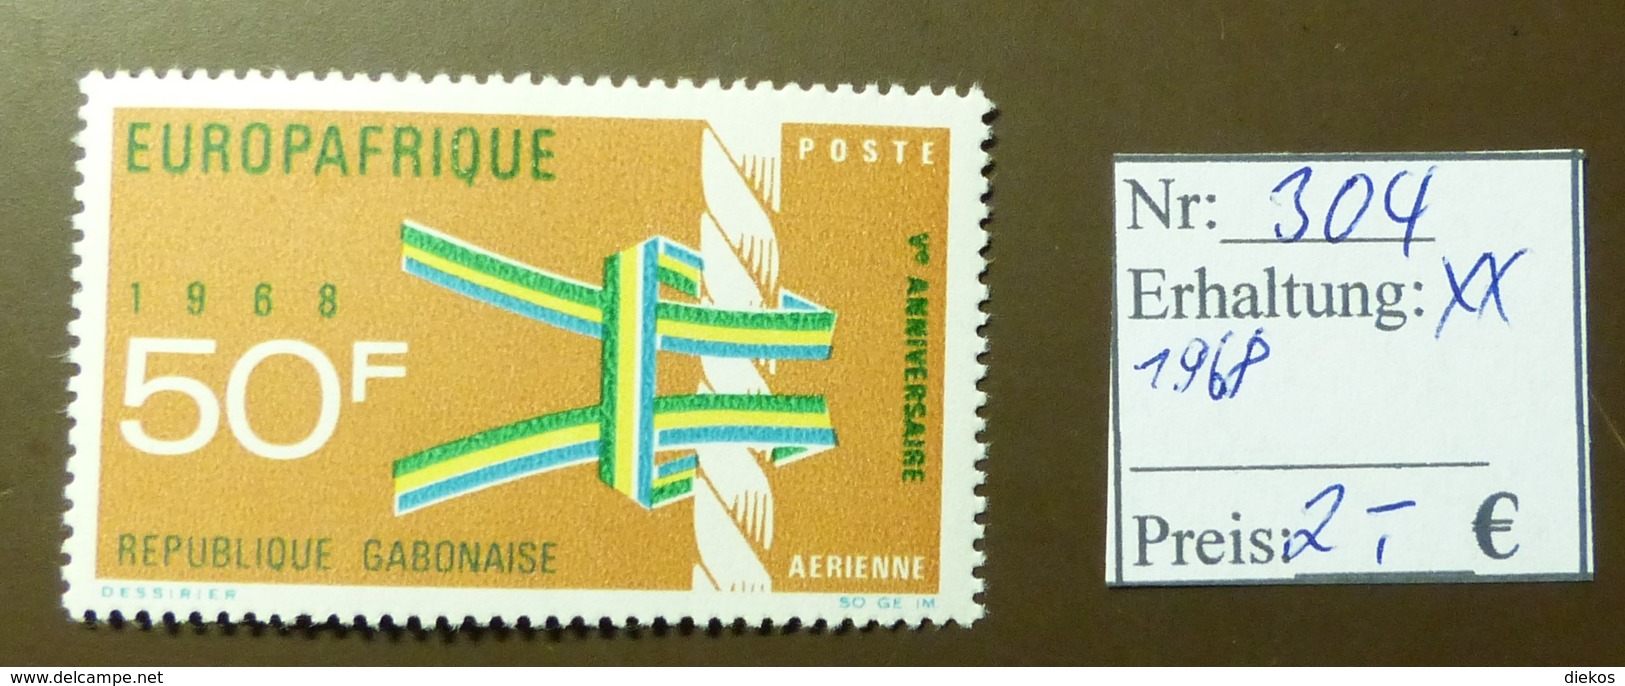 Gabunaise  Europafrique Europa  MiNr: 304  Postfrisch ** MNH     #4908 - Gabón (1960-...)